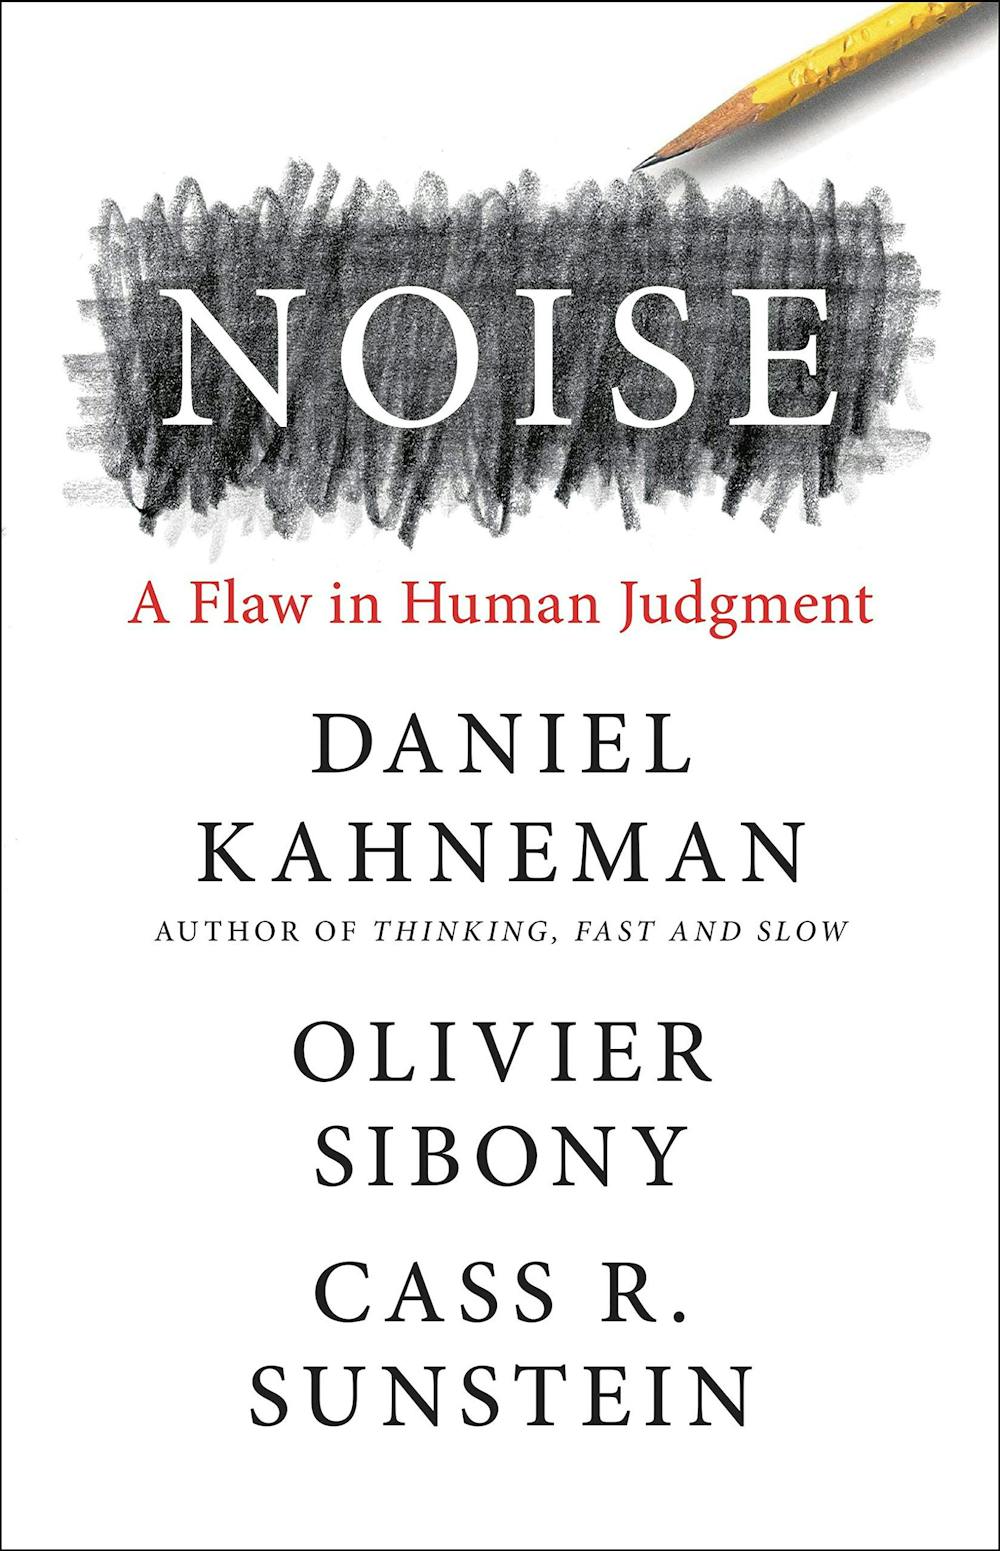 Daniel Kahneman in conversation 